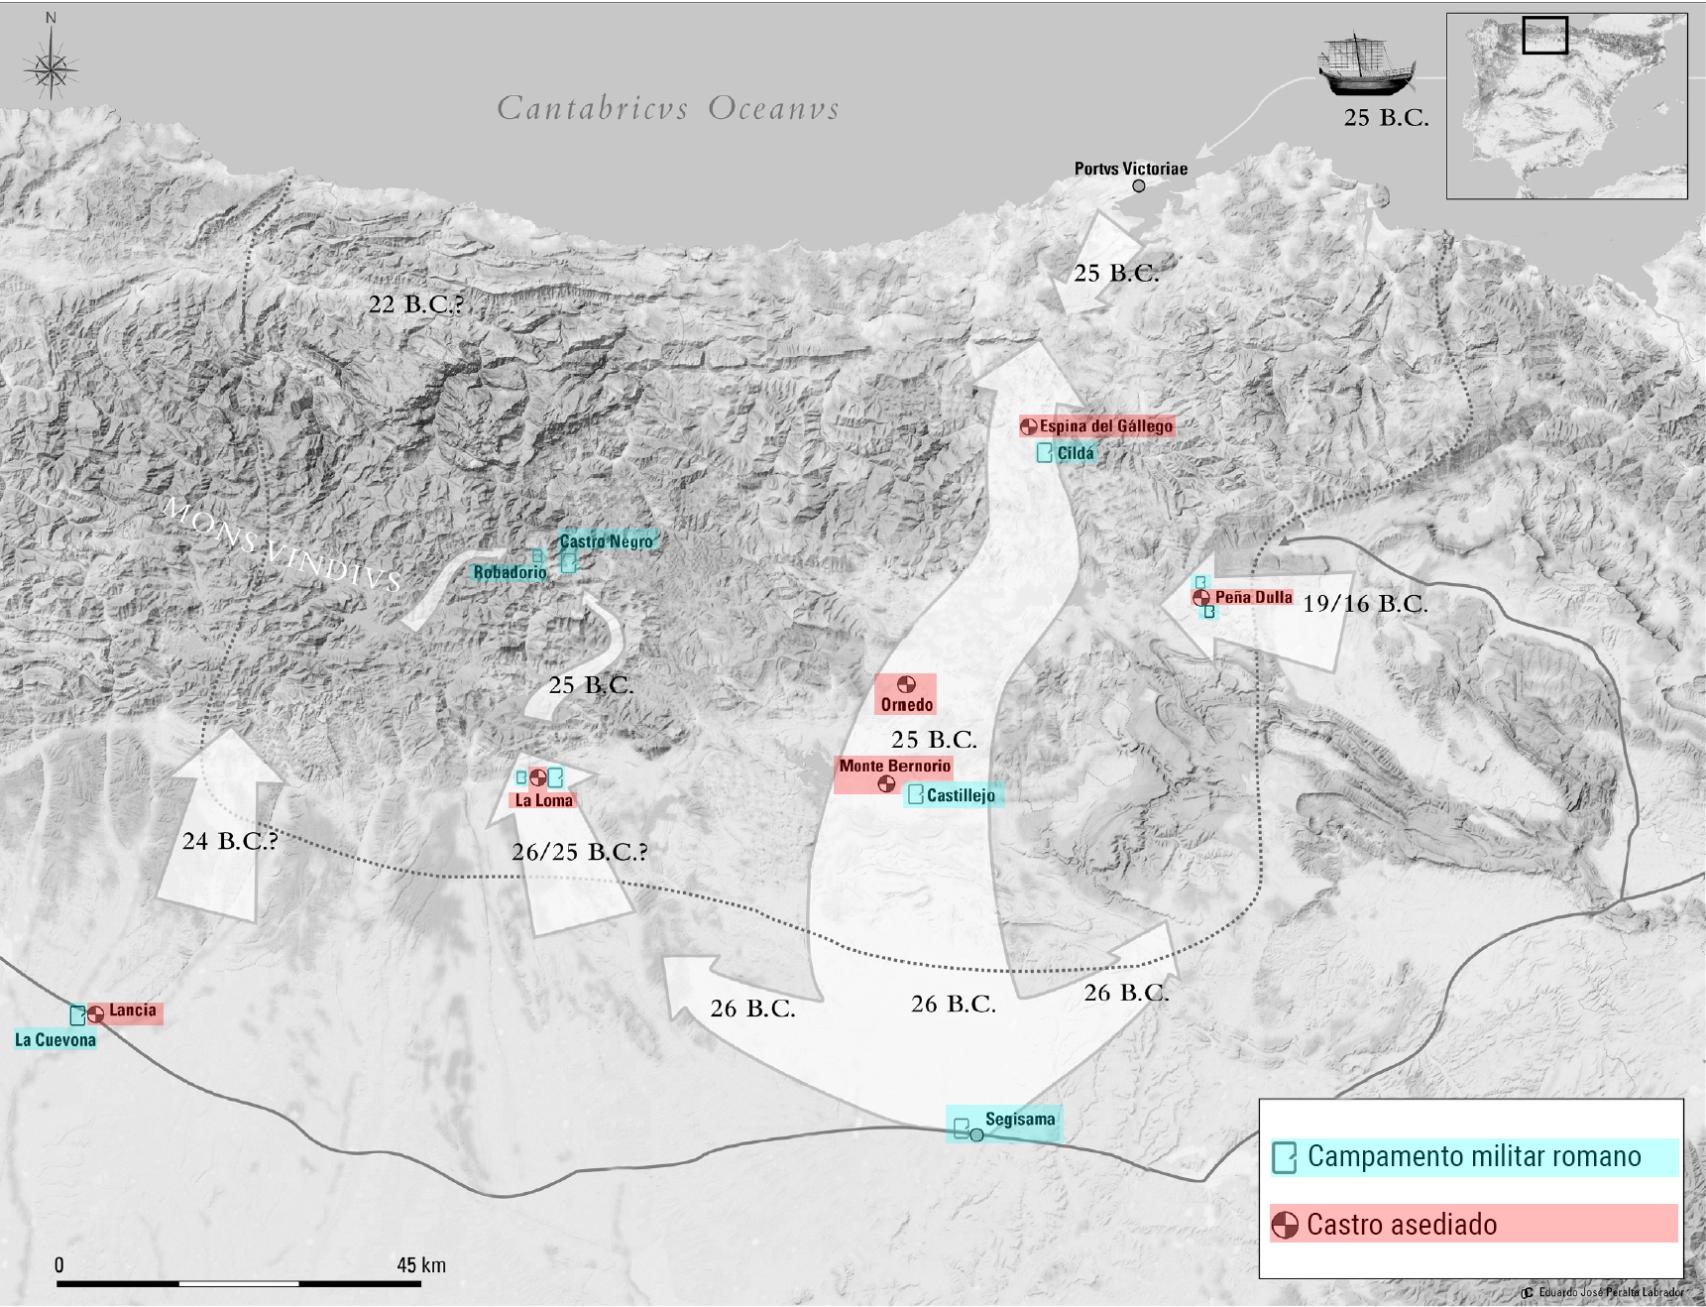 Algunos de los campamentos romanos y castros asediados más importantes en la zona de Cantabria y norte de Castilla y León.